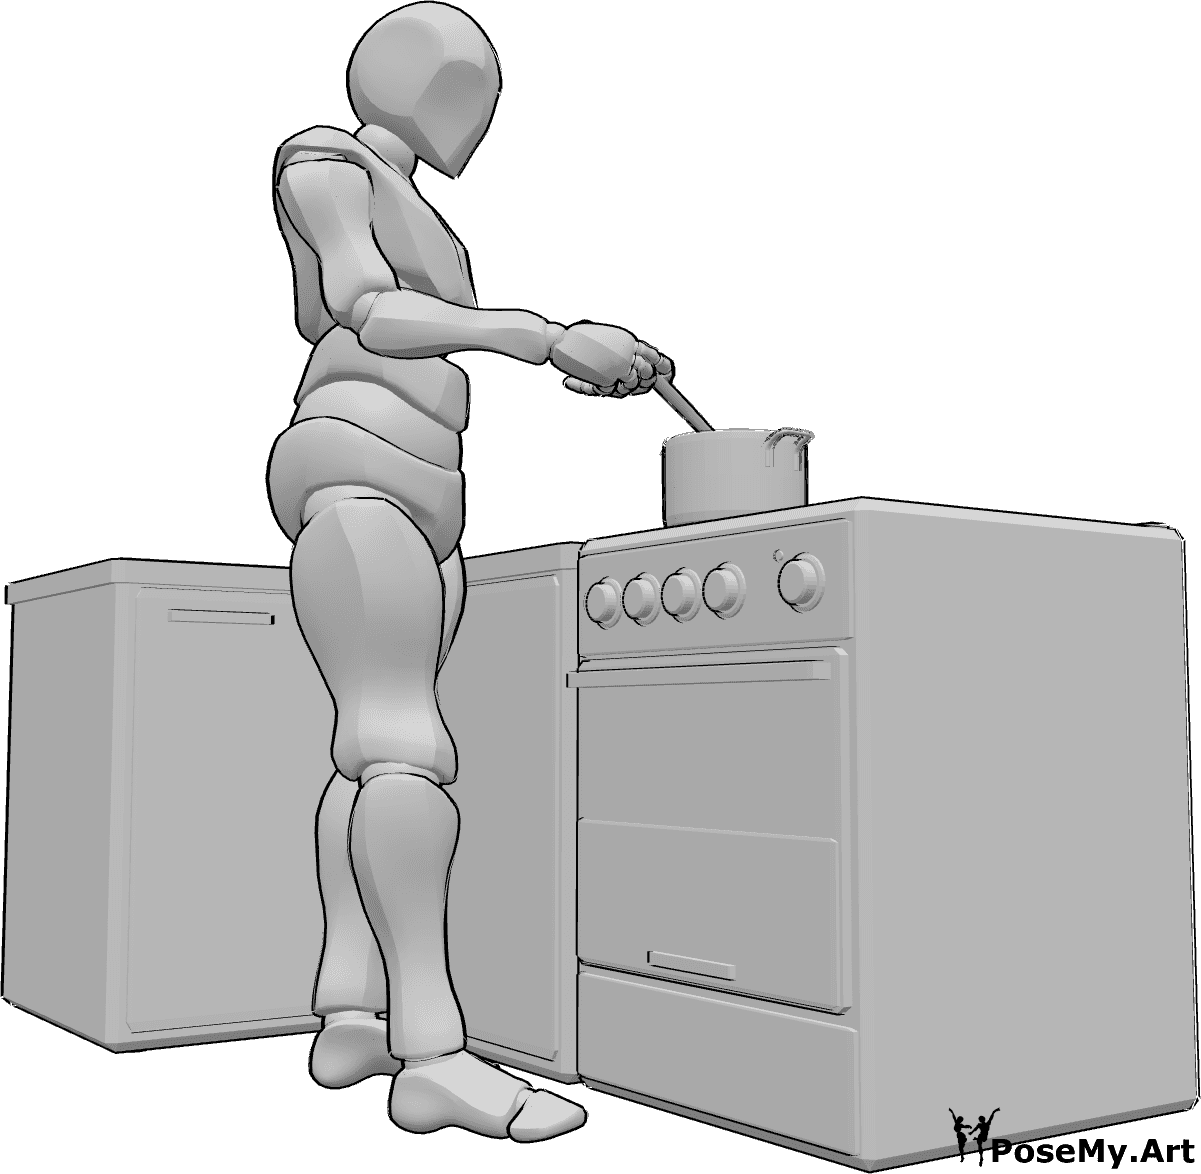 Posen-Referenz- Männliche Pose beim Kochen - Mann steht, kocht etwas in einem Kochtopf und rührt es mit einem Holzlöffel um